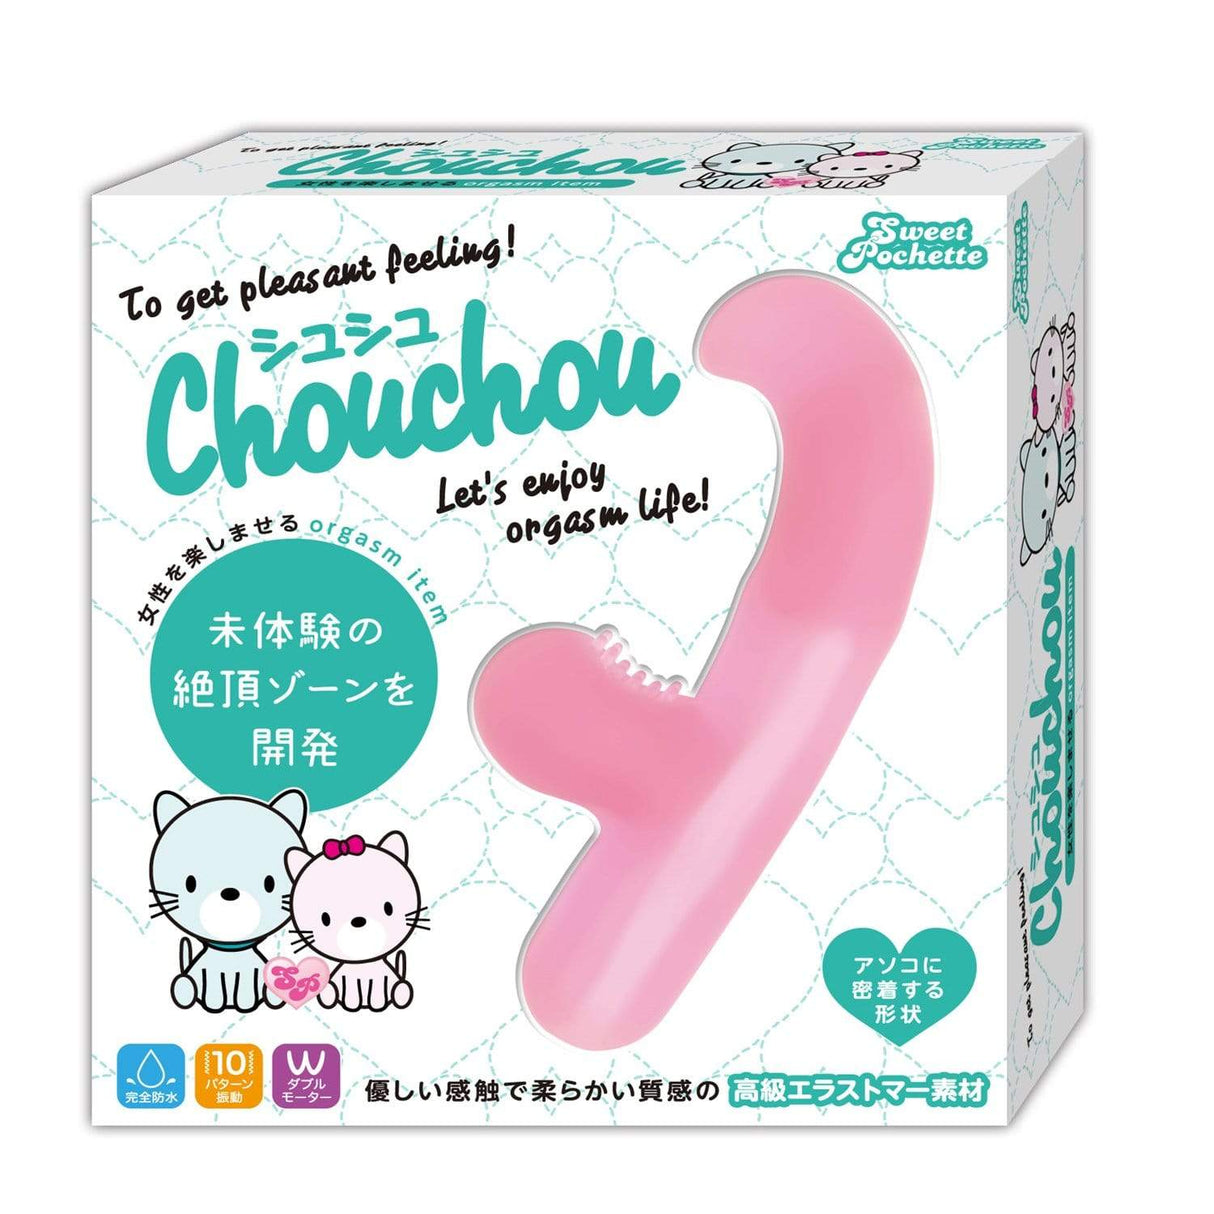 Sweet Pochette - ChouChou Remote Control Clit Massager (Pink) OT1104 CherryAffairs